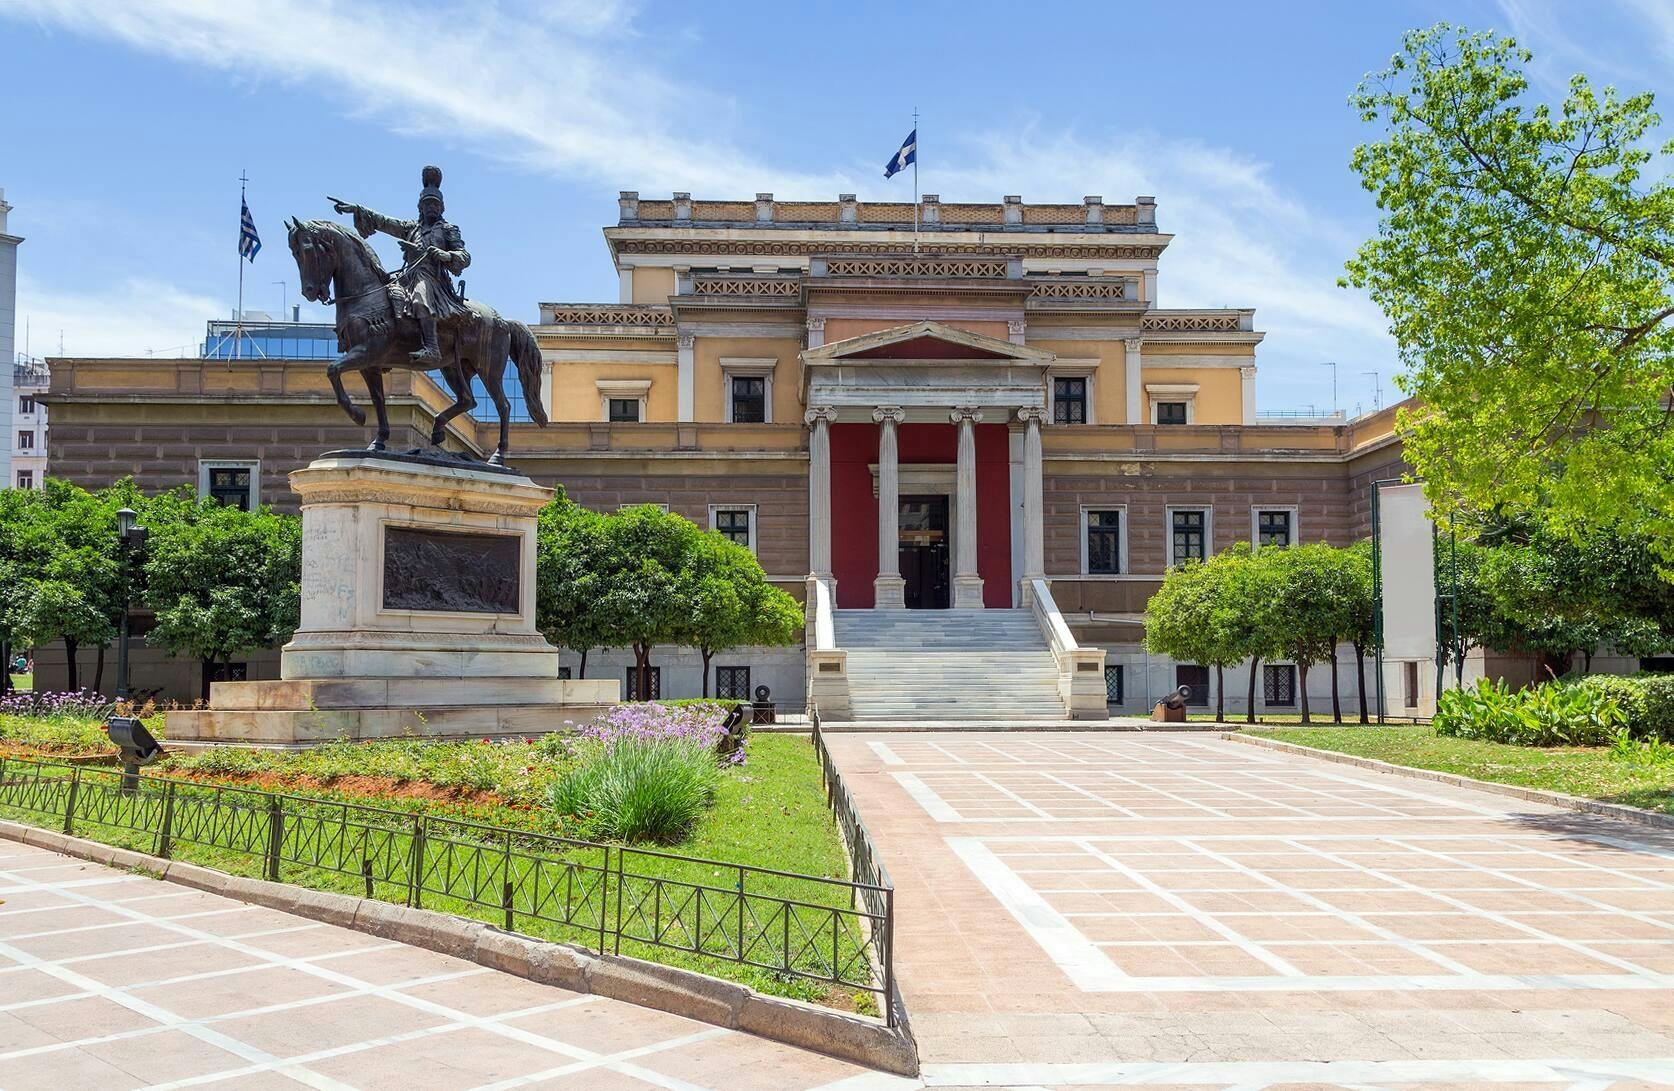 Athen Stadttour und Akropolis-Museum